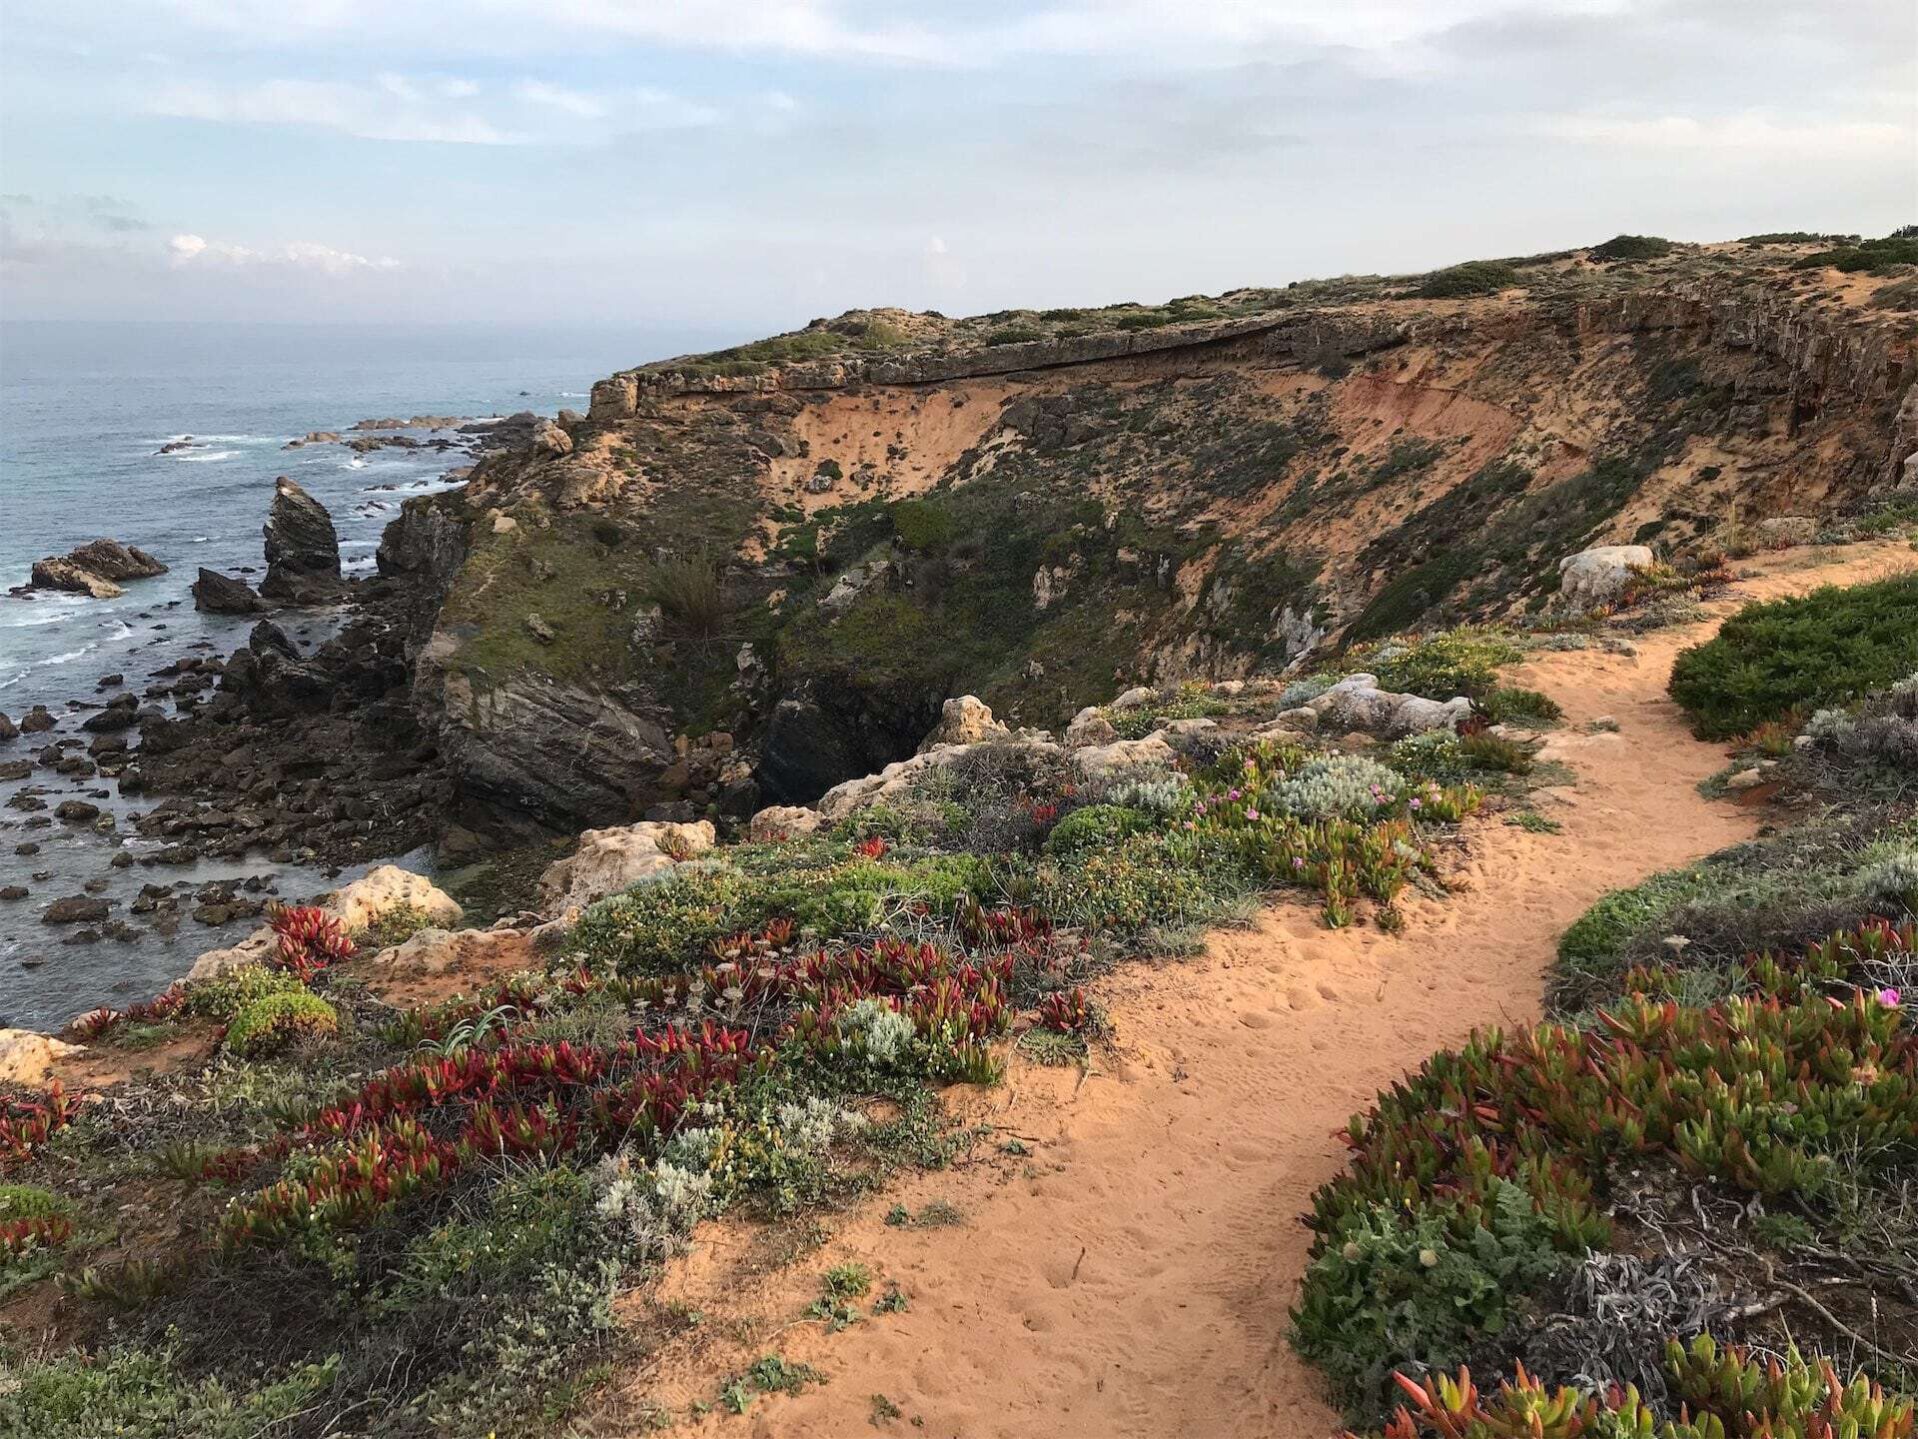 Een ruig kustlandschap langs de Rota Vicentina in Portugal. Steile zandkleurige kliffen steken uit boven de schuimende zee, met indrukwekkende rotsformaties die uit het water oprijzen. Een zandpad slingert zich door het kustlandschap, omzoomd door kleurrijke kustvegetatie met rode en groene tinten.